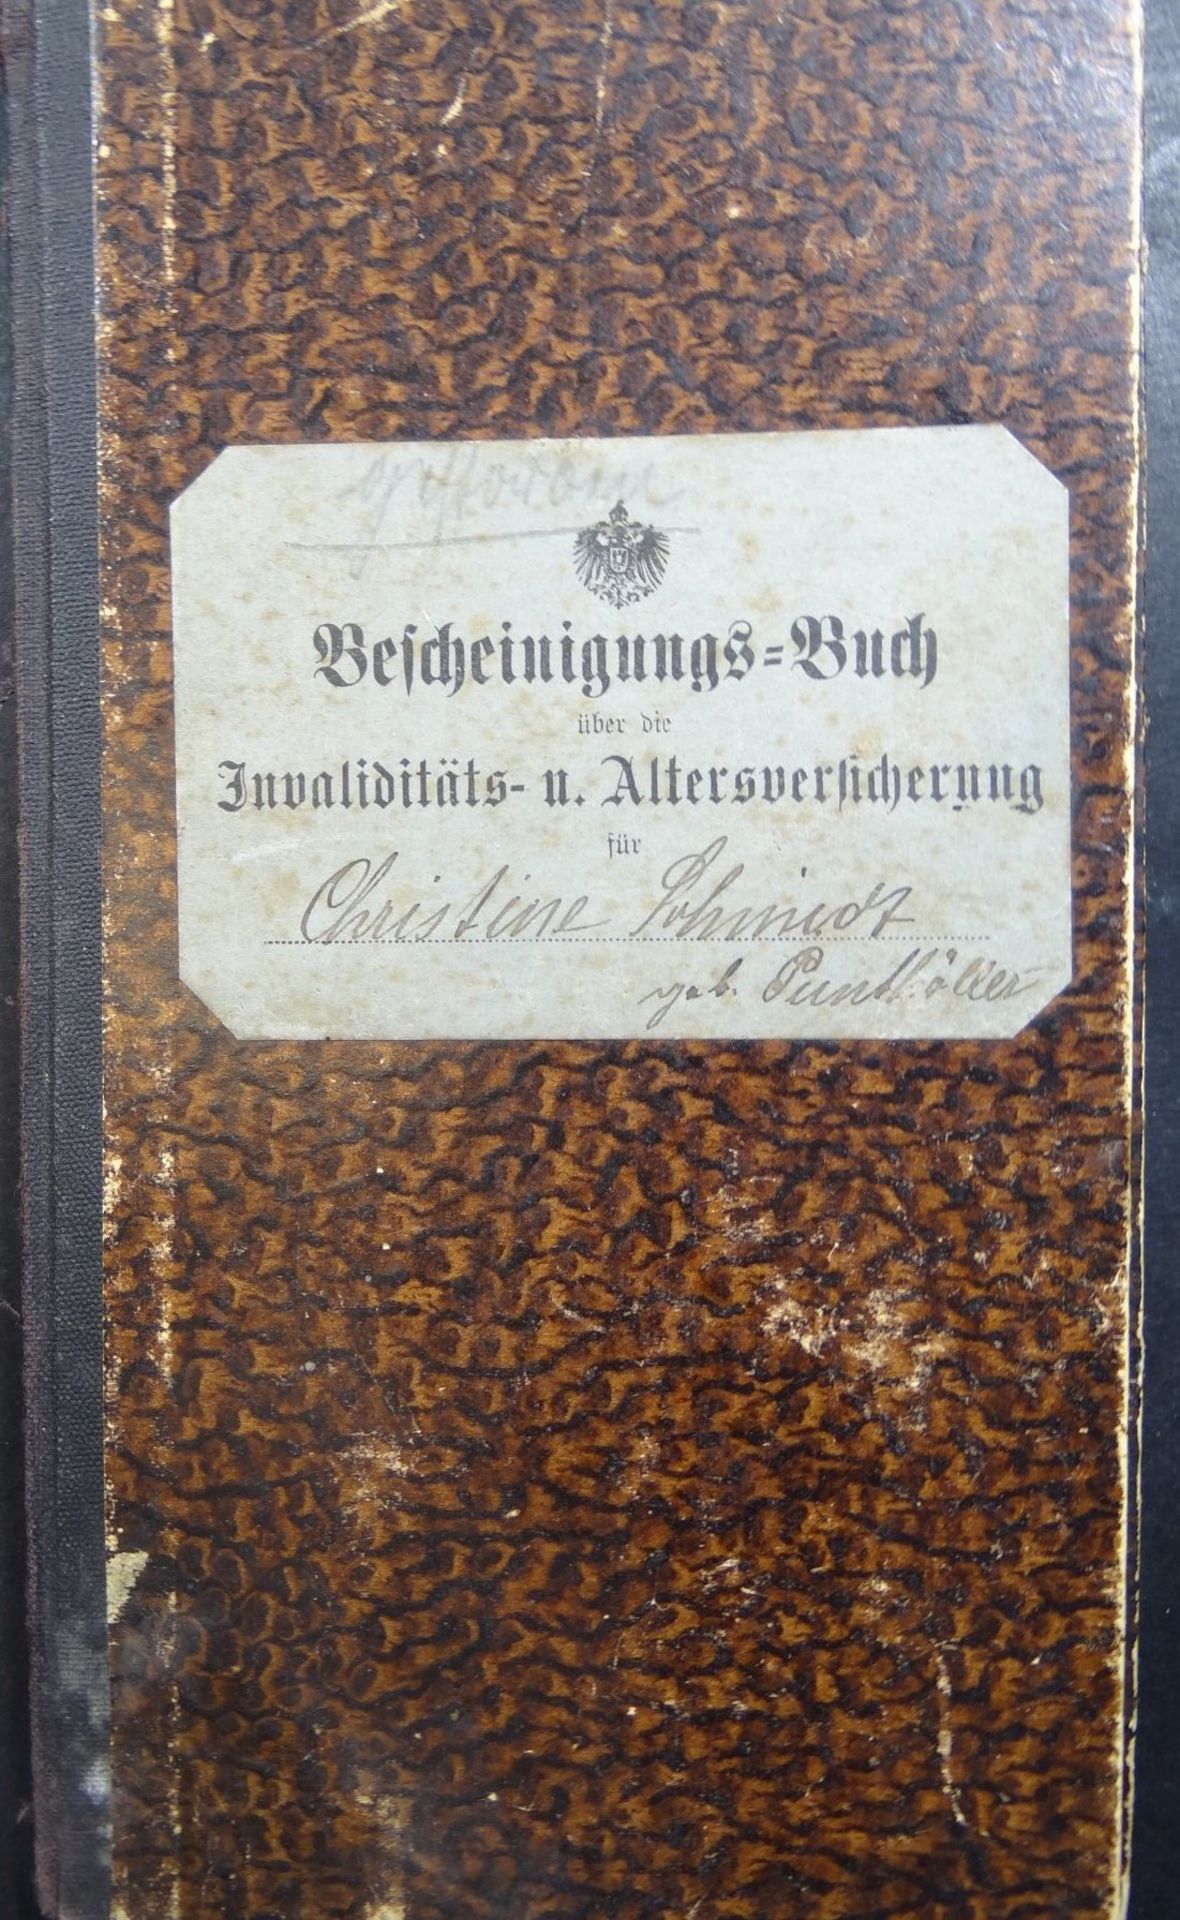 Lot Papiere, Meisterbrief, Wander-Buch, Handwerskammer, Reichsmusikkammer etc., ca. 1930-1945 - Bild 7 aus 10